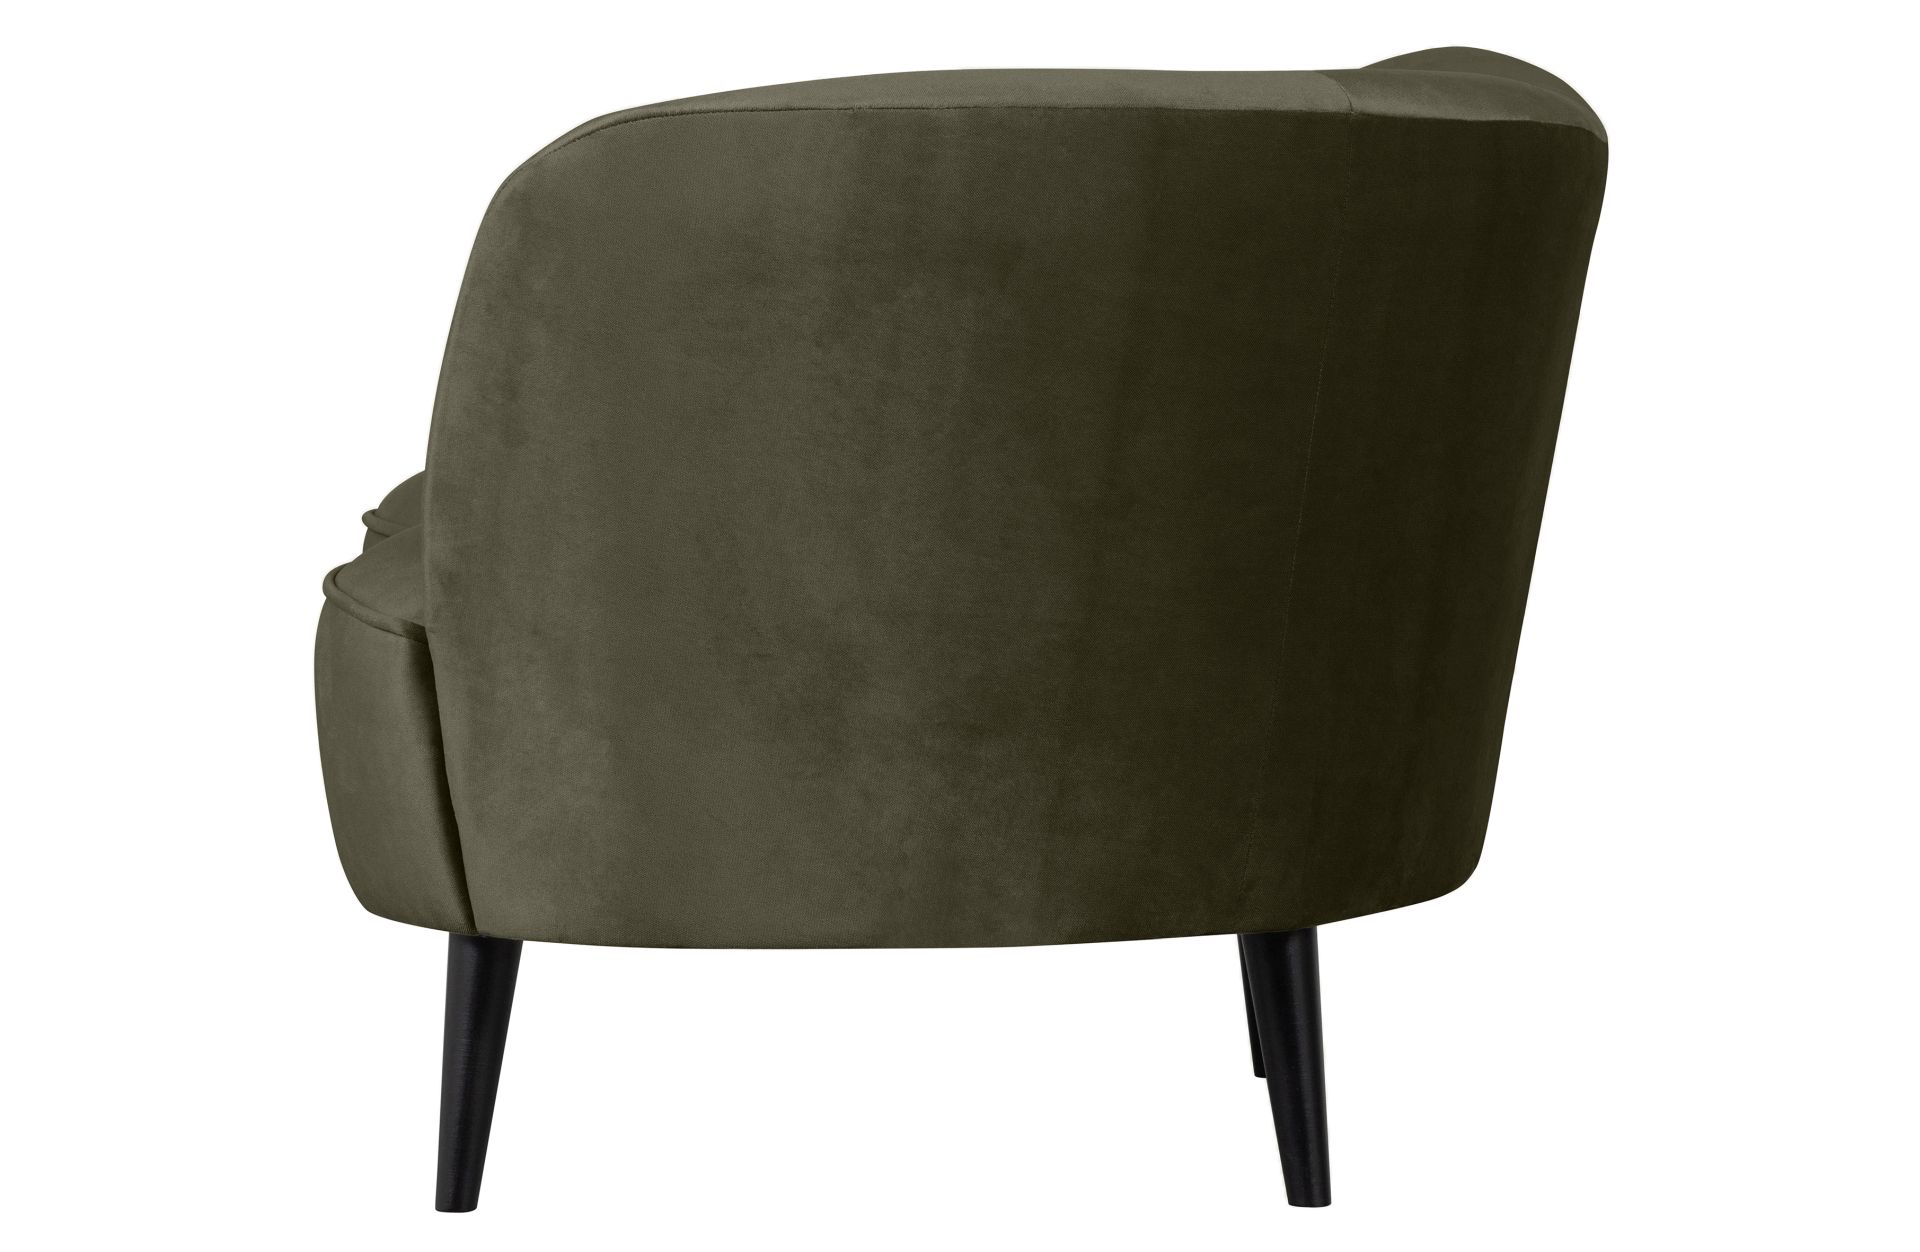 Der Loungesessel Sara überzeugt mit seinem modernem Design und seine speziellen Form. Gefertigt wurde er aus Samt, welcher einen Grünen Farbton besitzt. Das Gestell ist aus Holz und ist schwarz